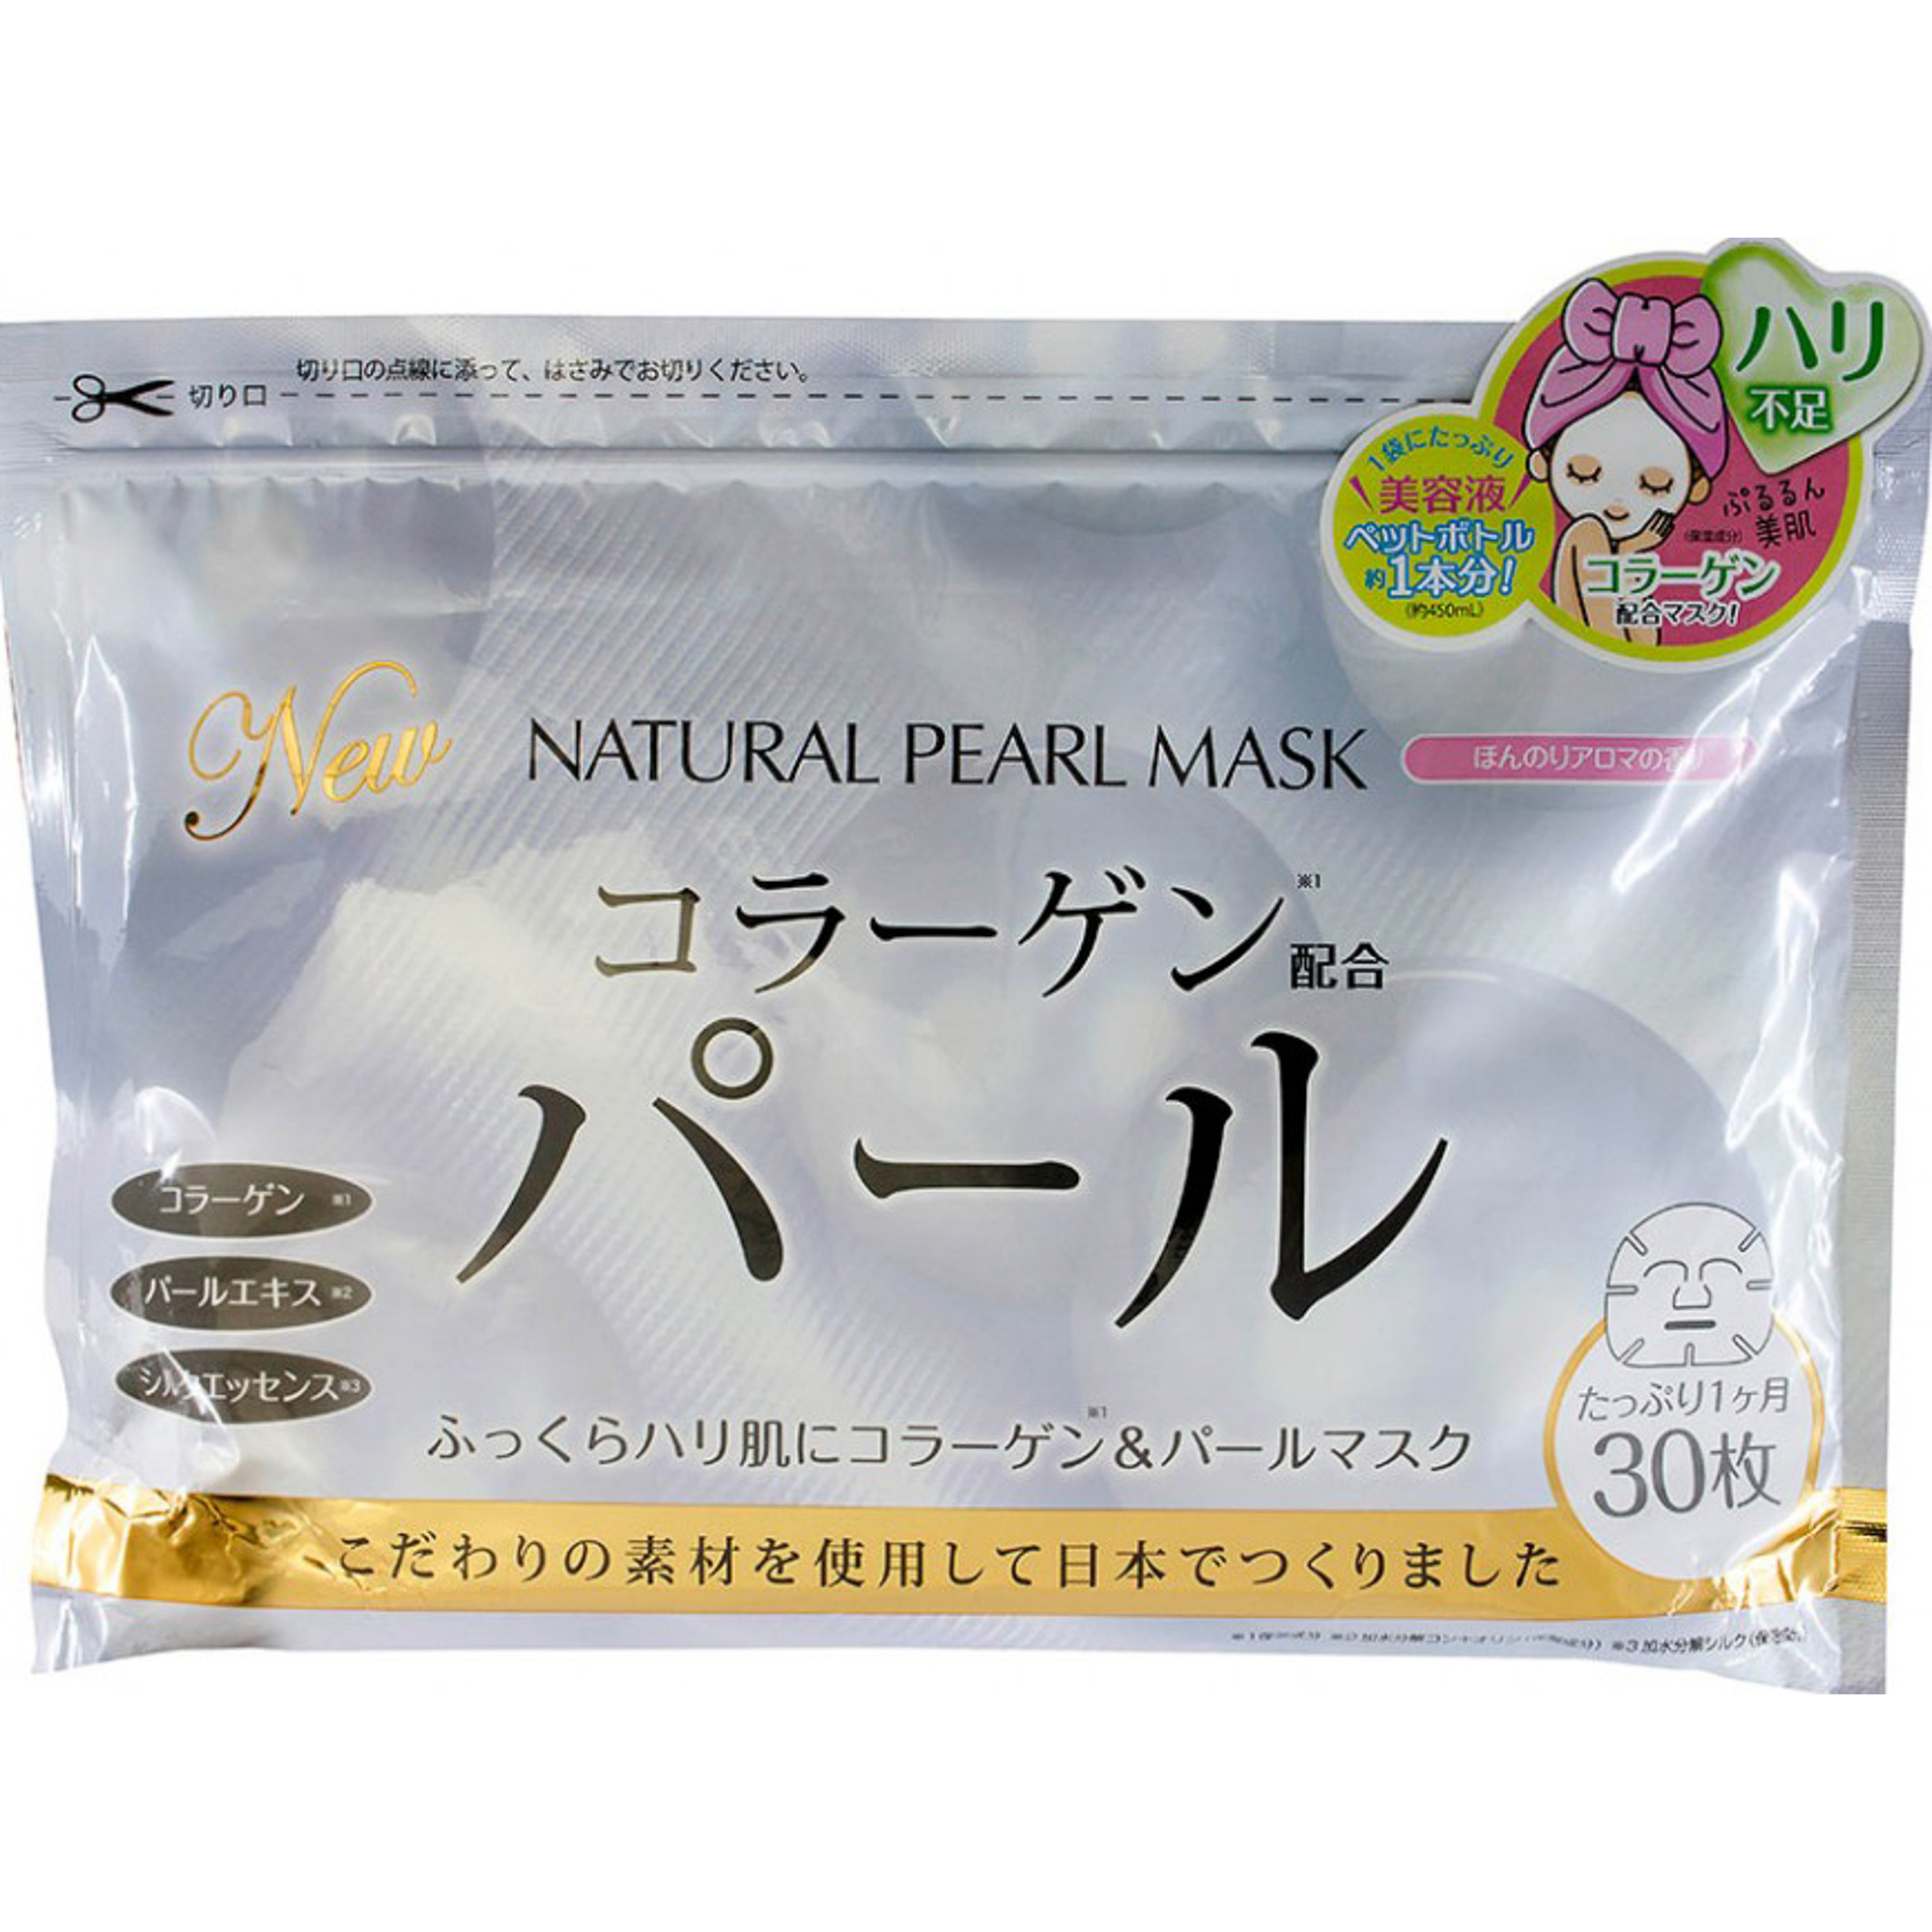 Тканевая маска Japan Gals С экстрактом жемчуга 30 шт маска для лица japan gals premium grade hyalpack суперувлажнение 12 шт